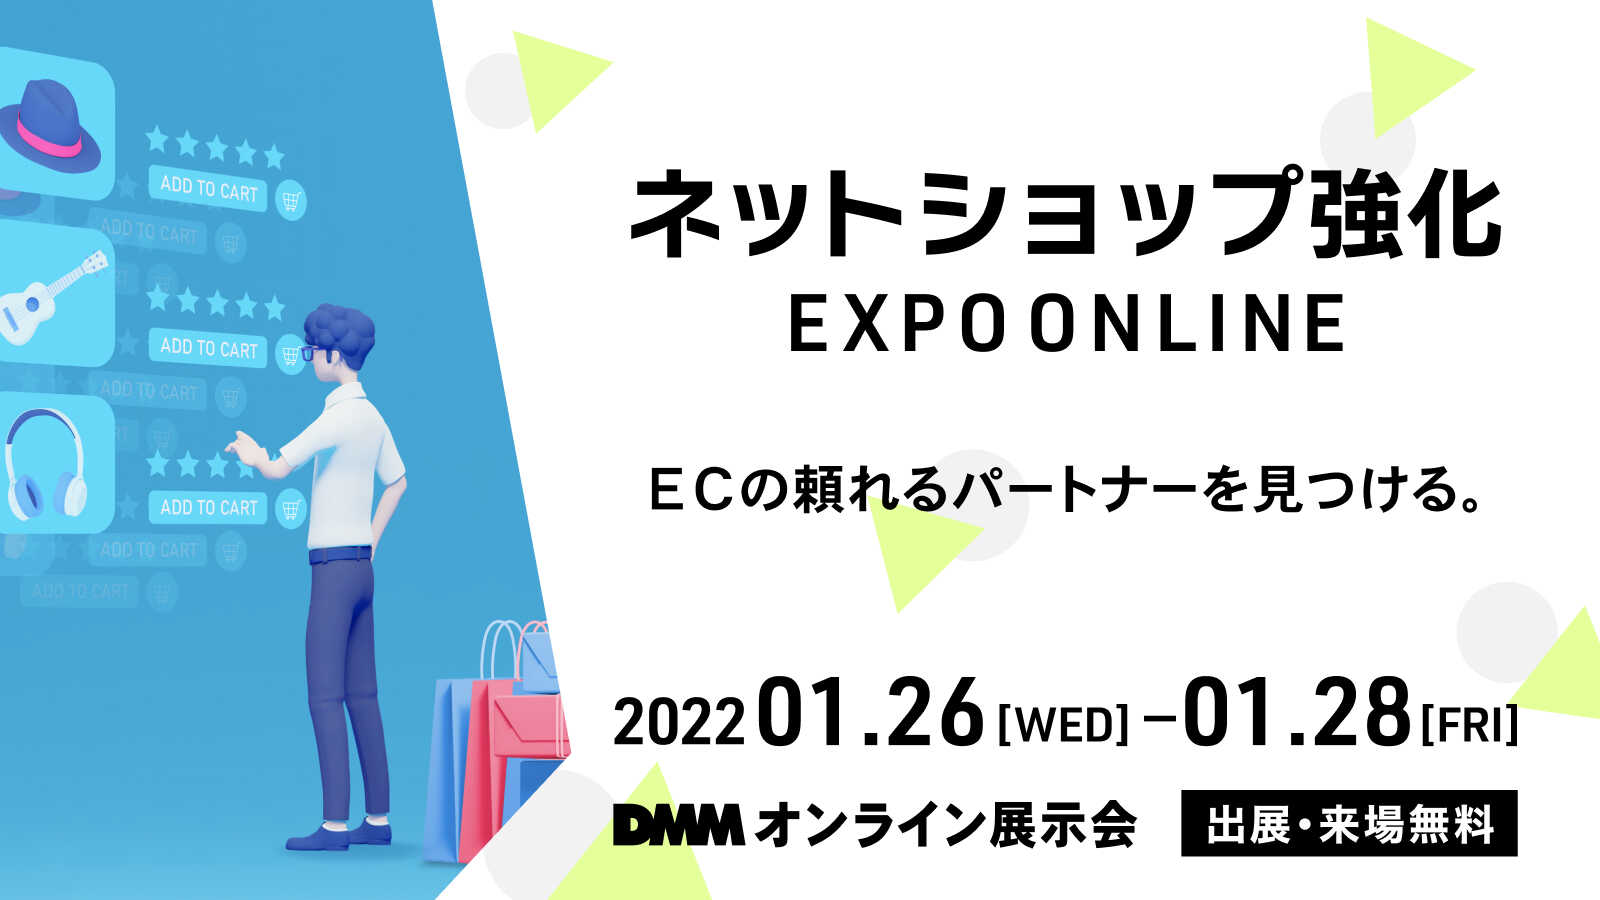 「ネットショップ強化 EXPO ONLINE」出展のお知らせ